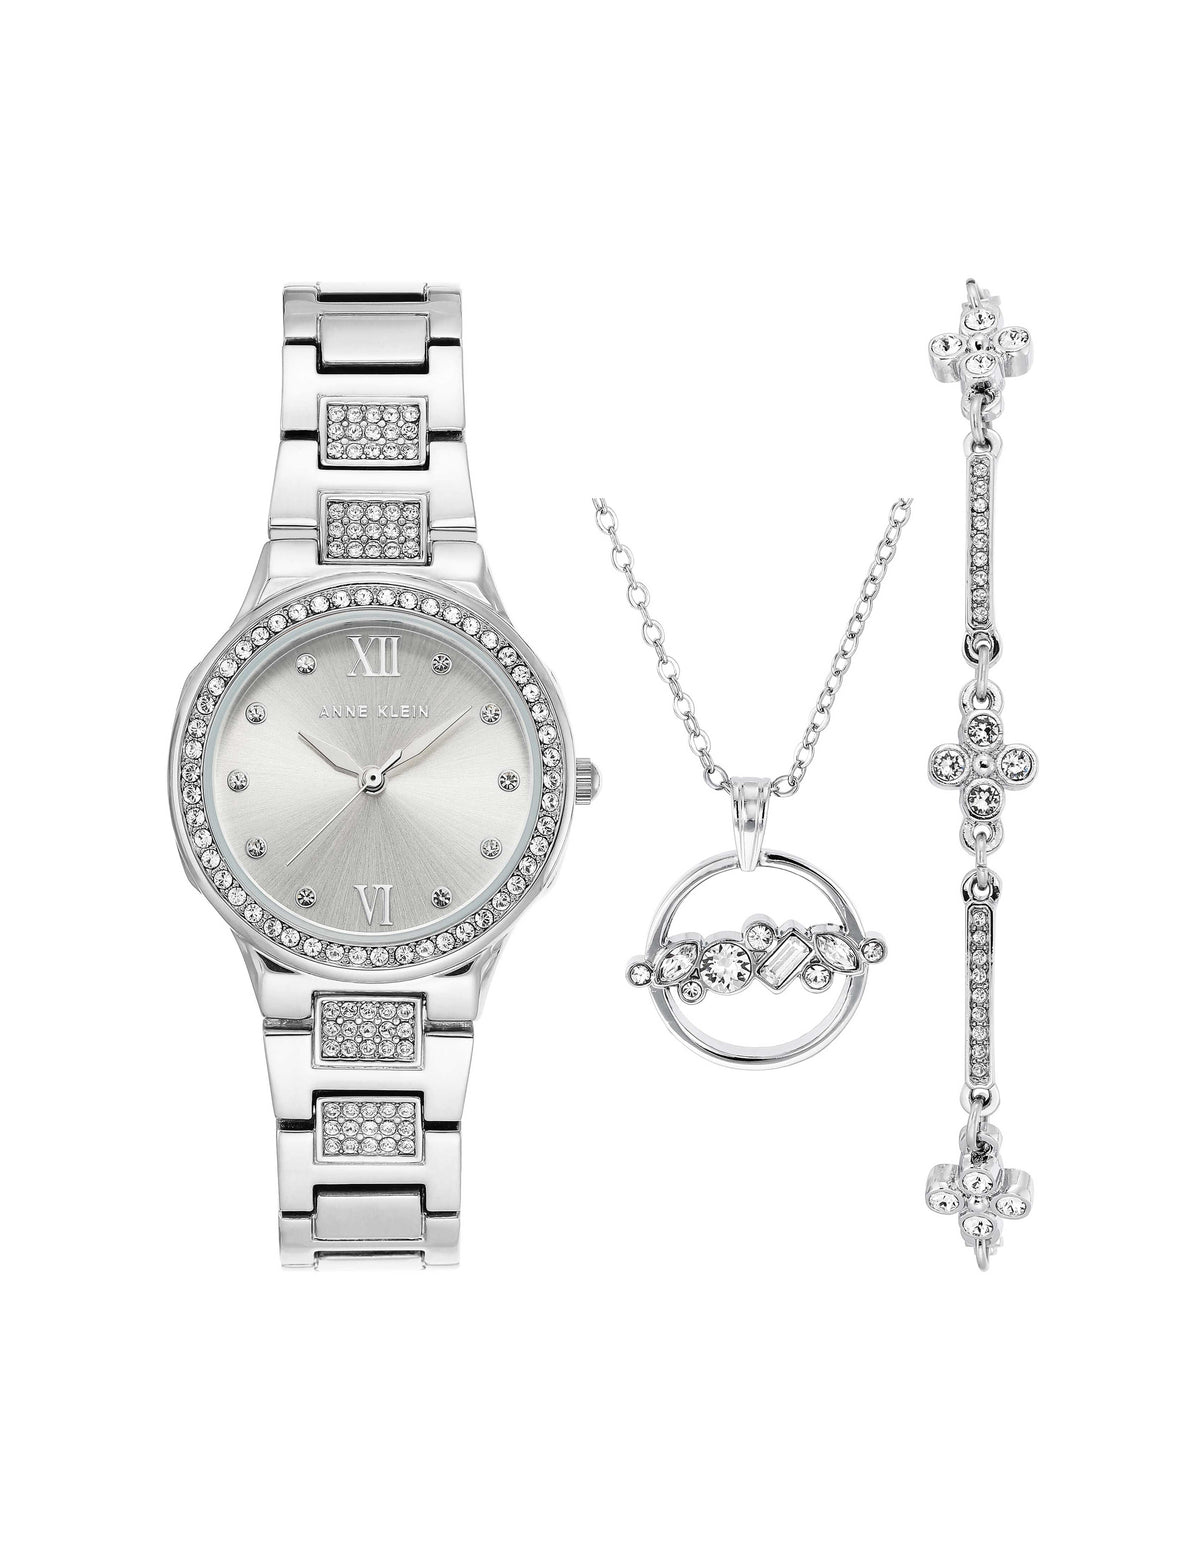 Watch, Bracelet, and Necklace Set